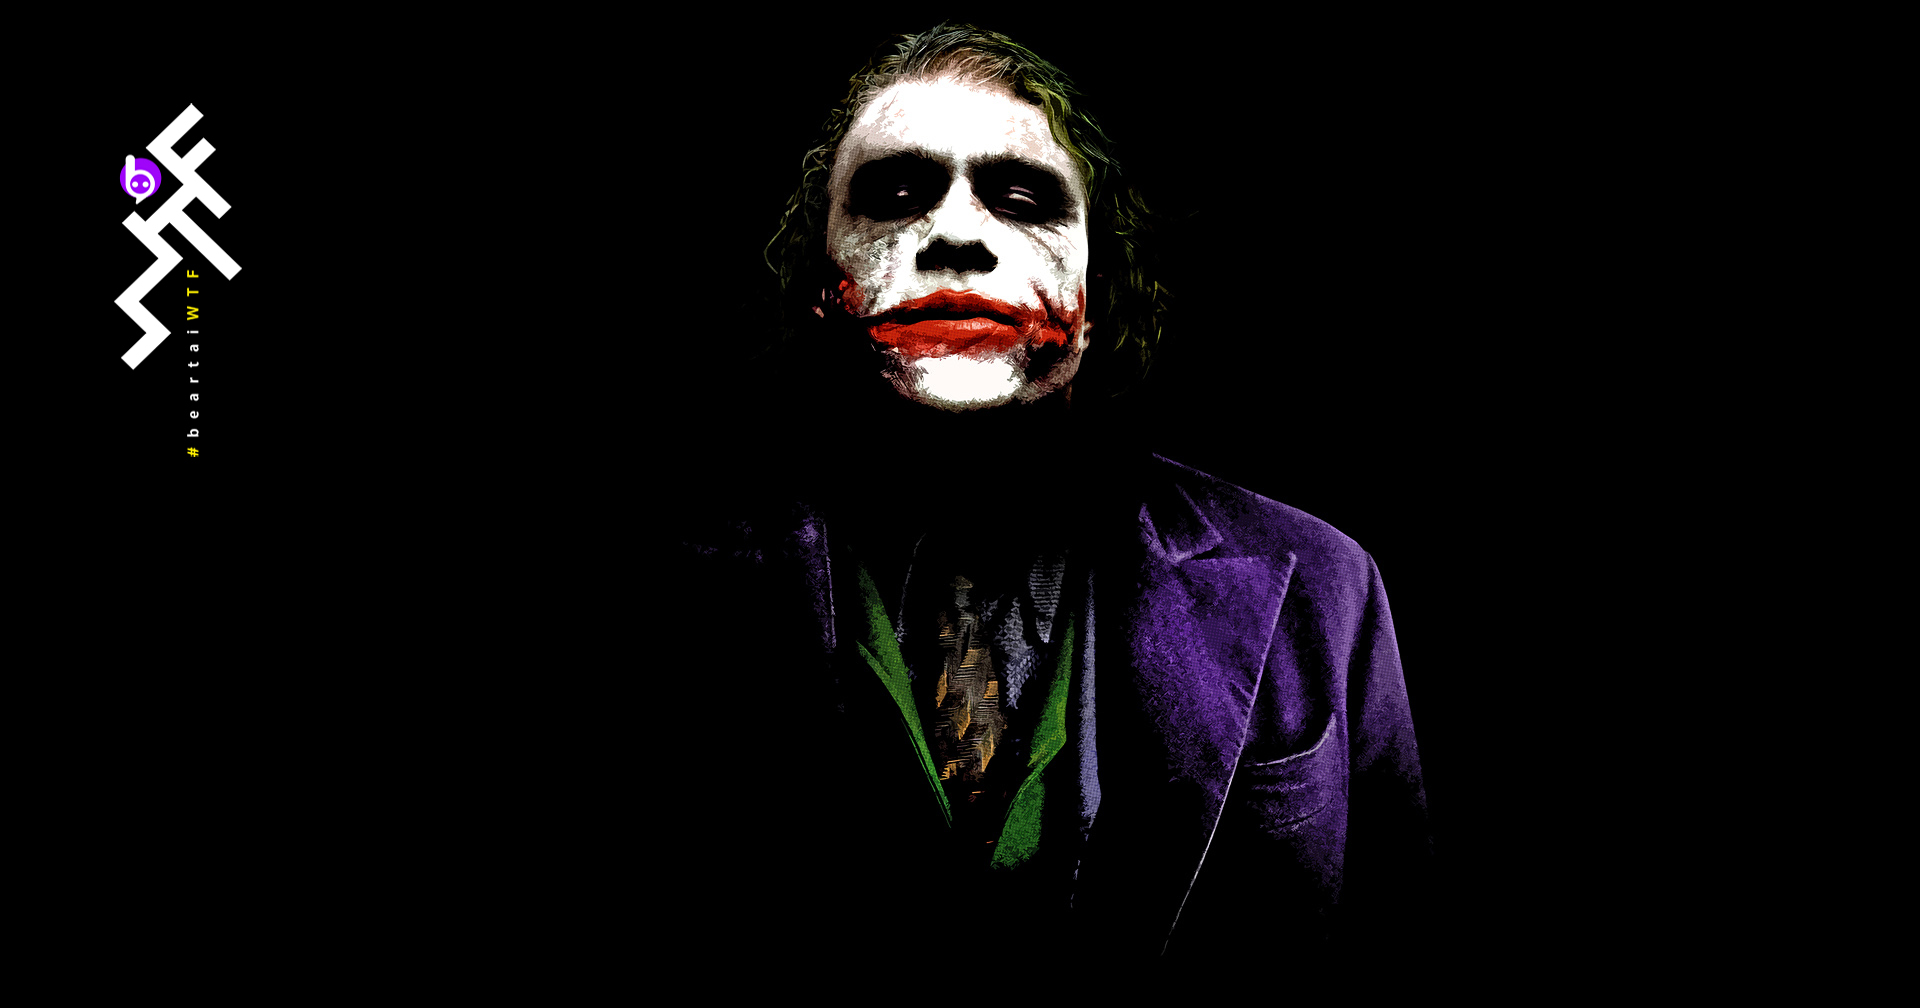 ครบรอบ 12 ปีการจากไปของ ฮีธ เล็ดเจอร์ กับเกร็ดน่าสนใจจากบท Joker ใน The Dark Knight (2008)